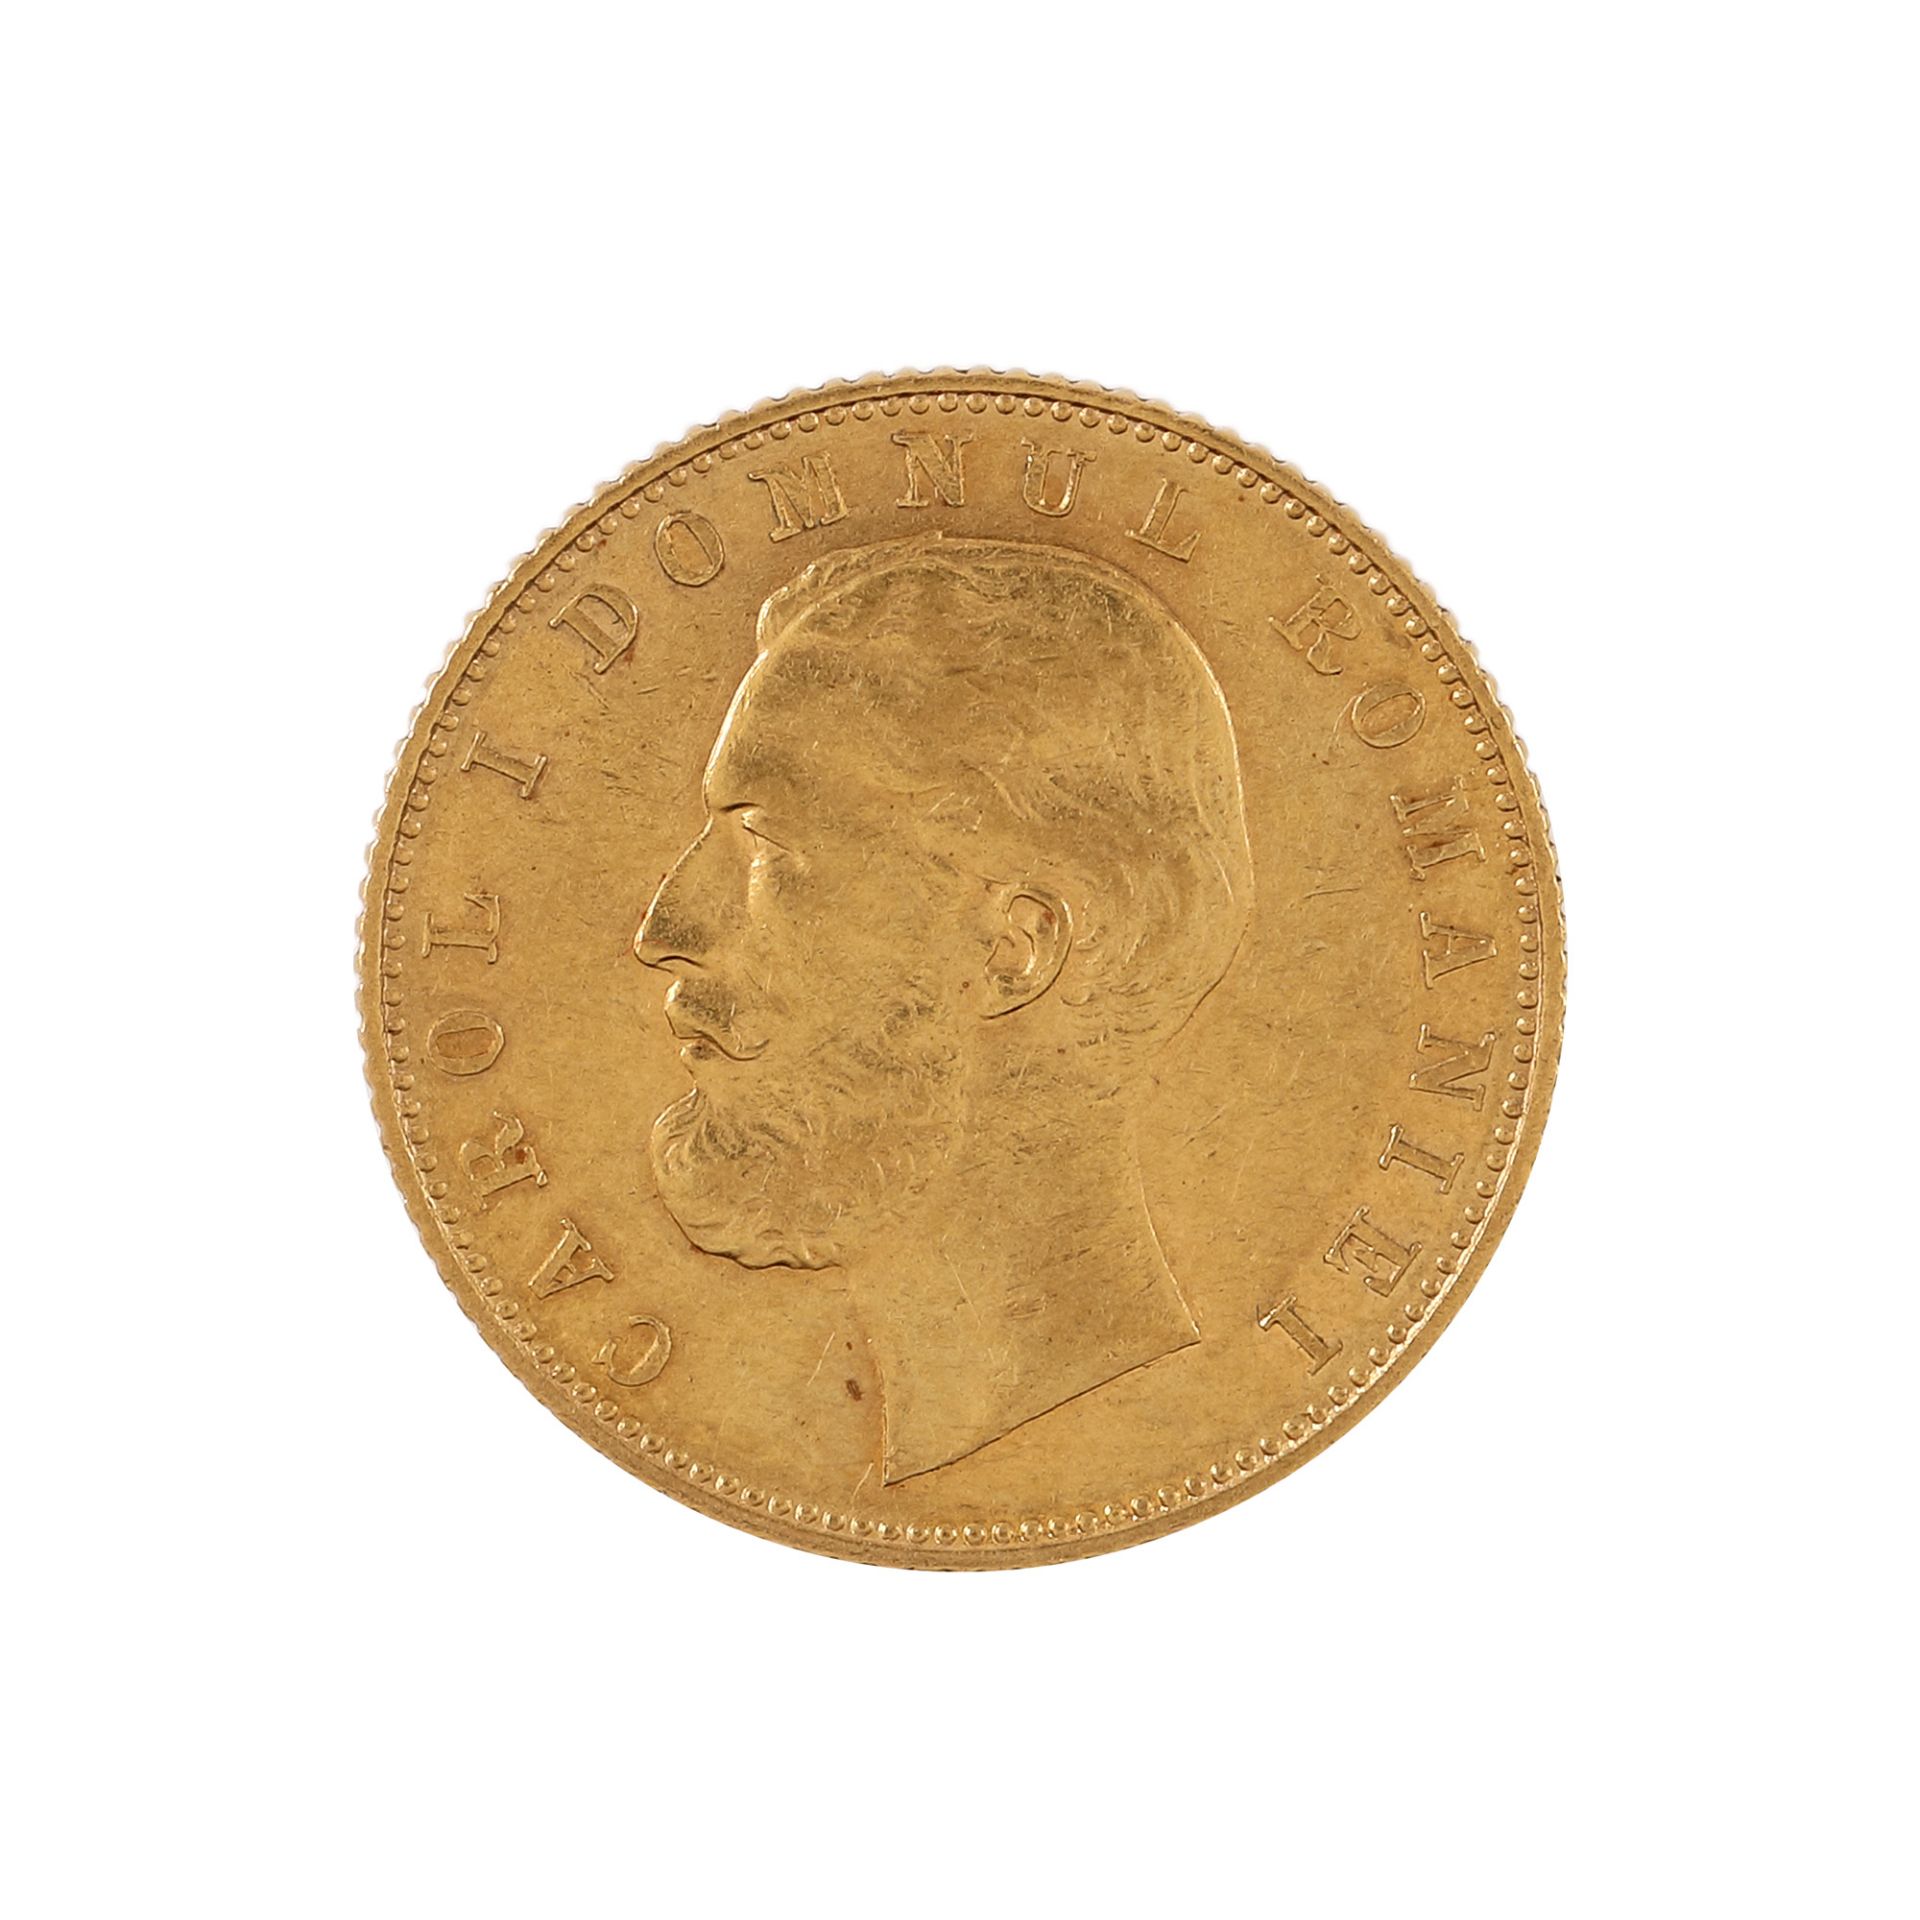 20 Lei 1870 coin, gold